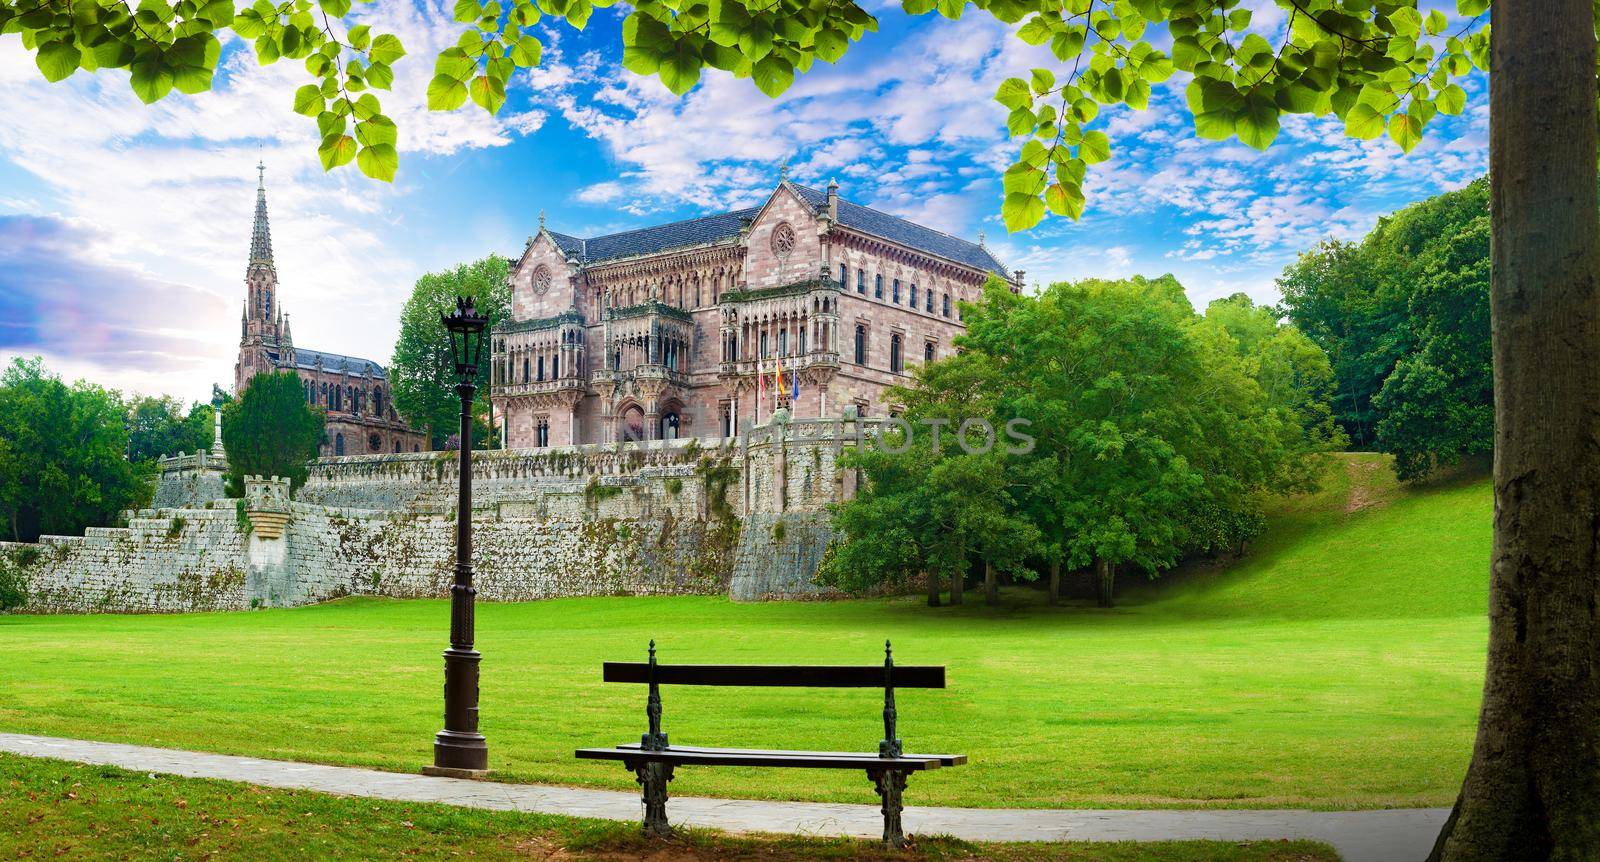 Palace Sobrellano, Comillas, Cantabria, Spain by carloscastilla